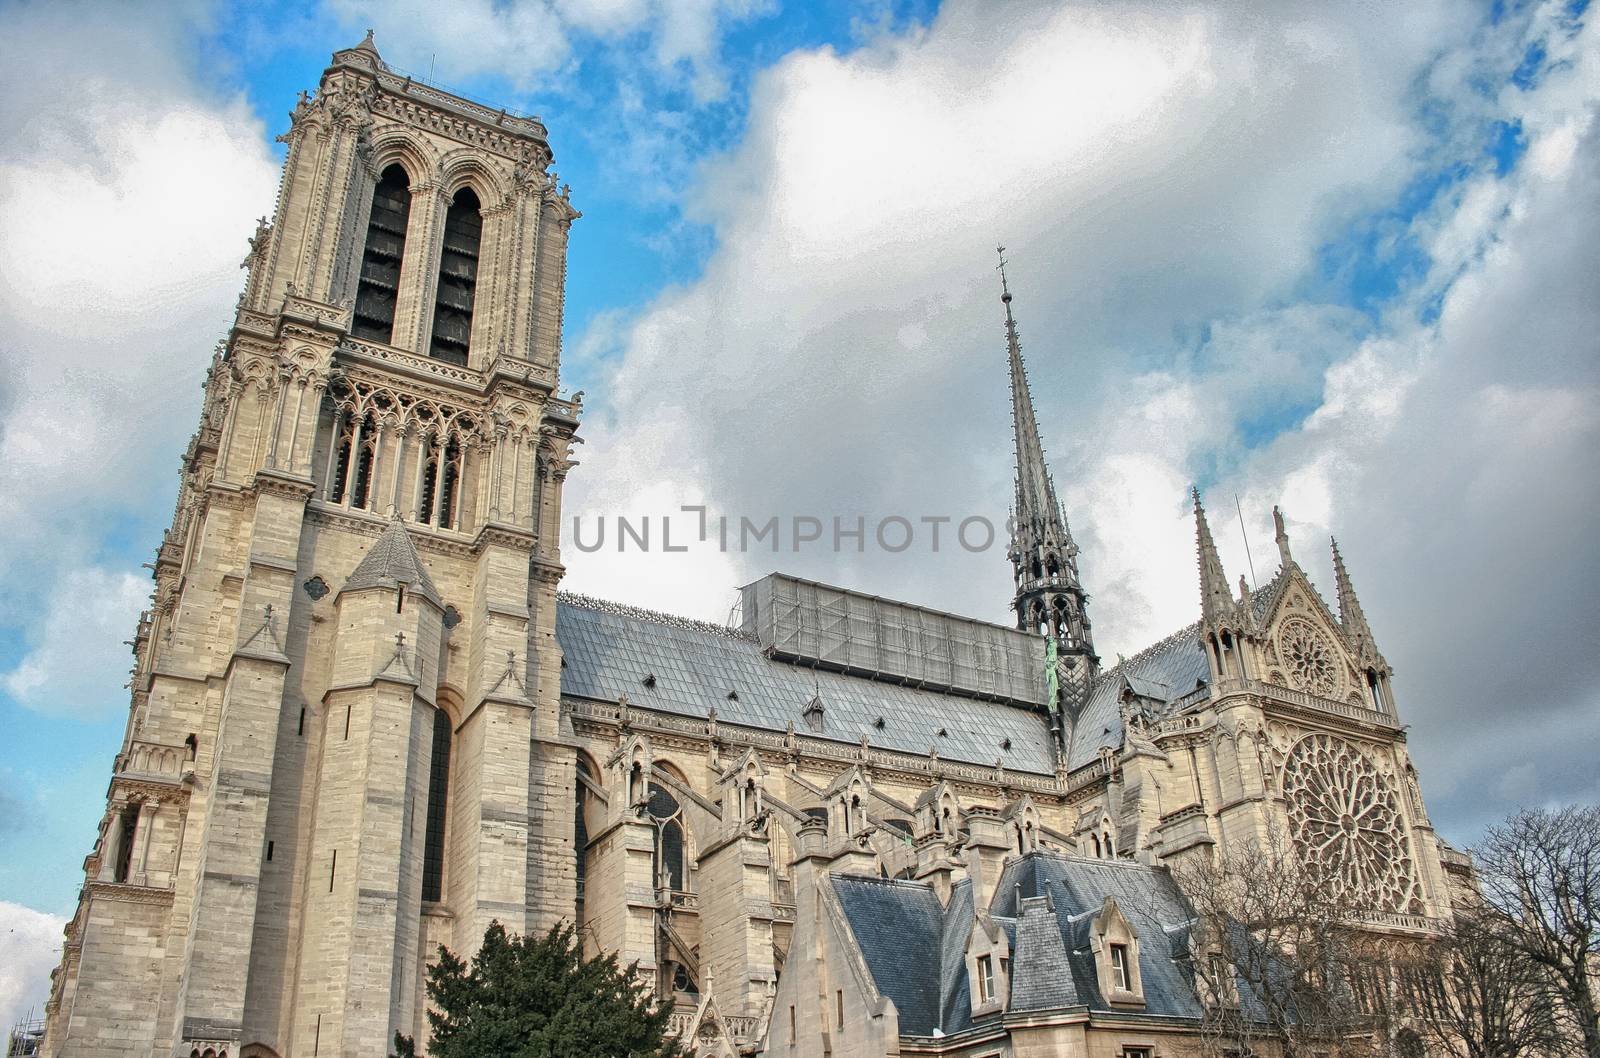 La Cathedrale de Notre-Dame. Paris famous Cathedral by jovannig